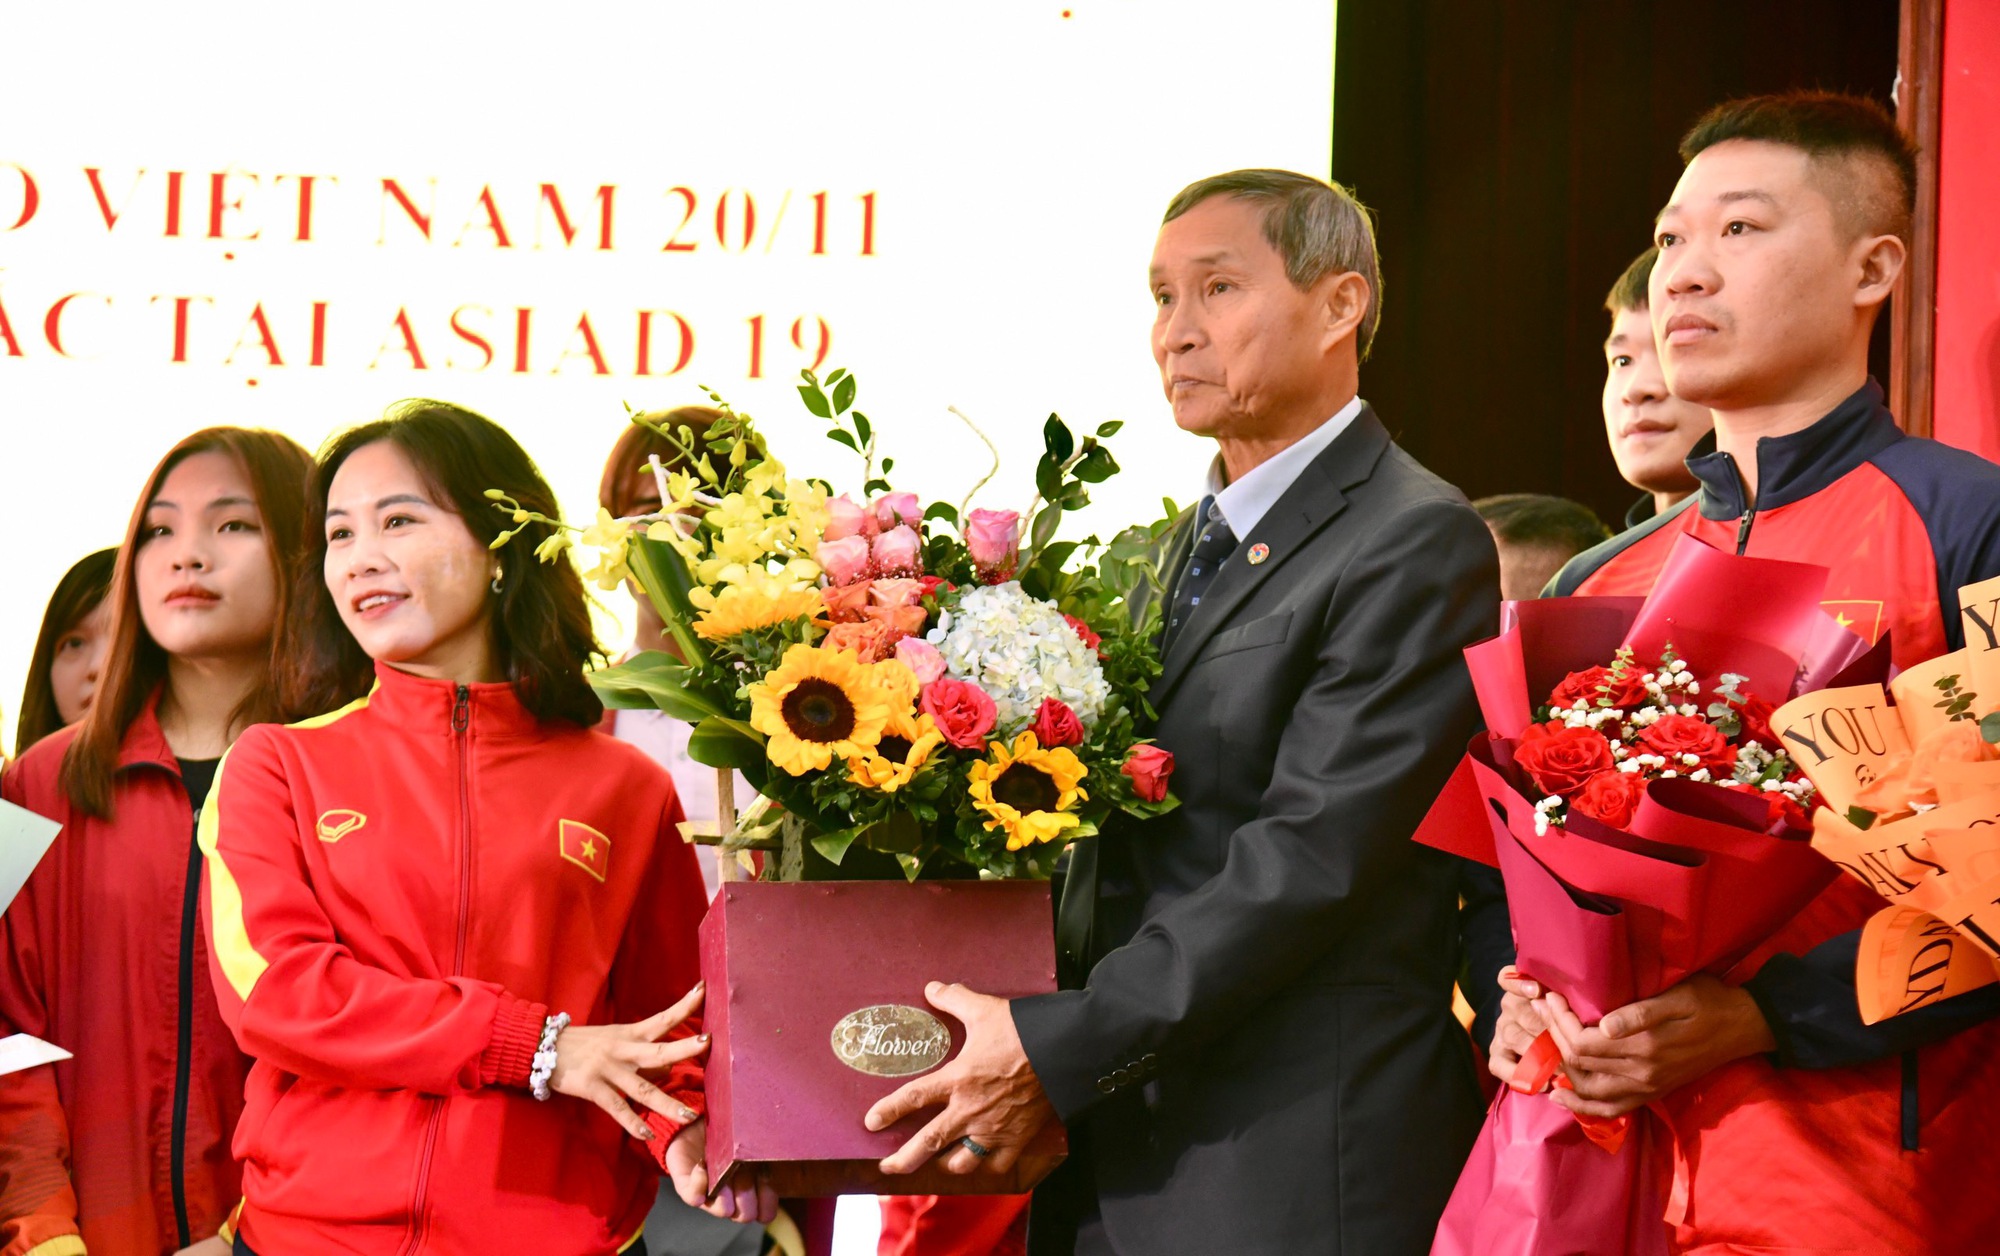 Tri ân HLV Mai Đức Chung và trao thưởng các tuyển thủ Việt Nam giành HCV ASIAD 19 - Ảnh 4.